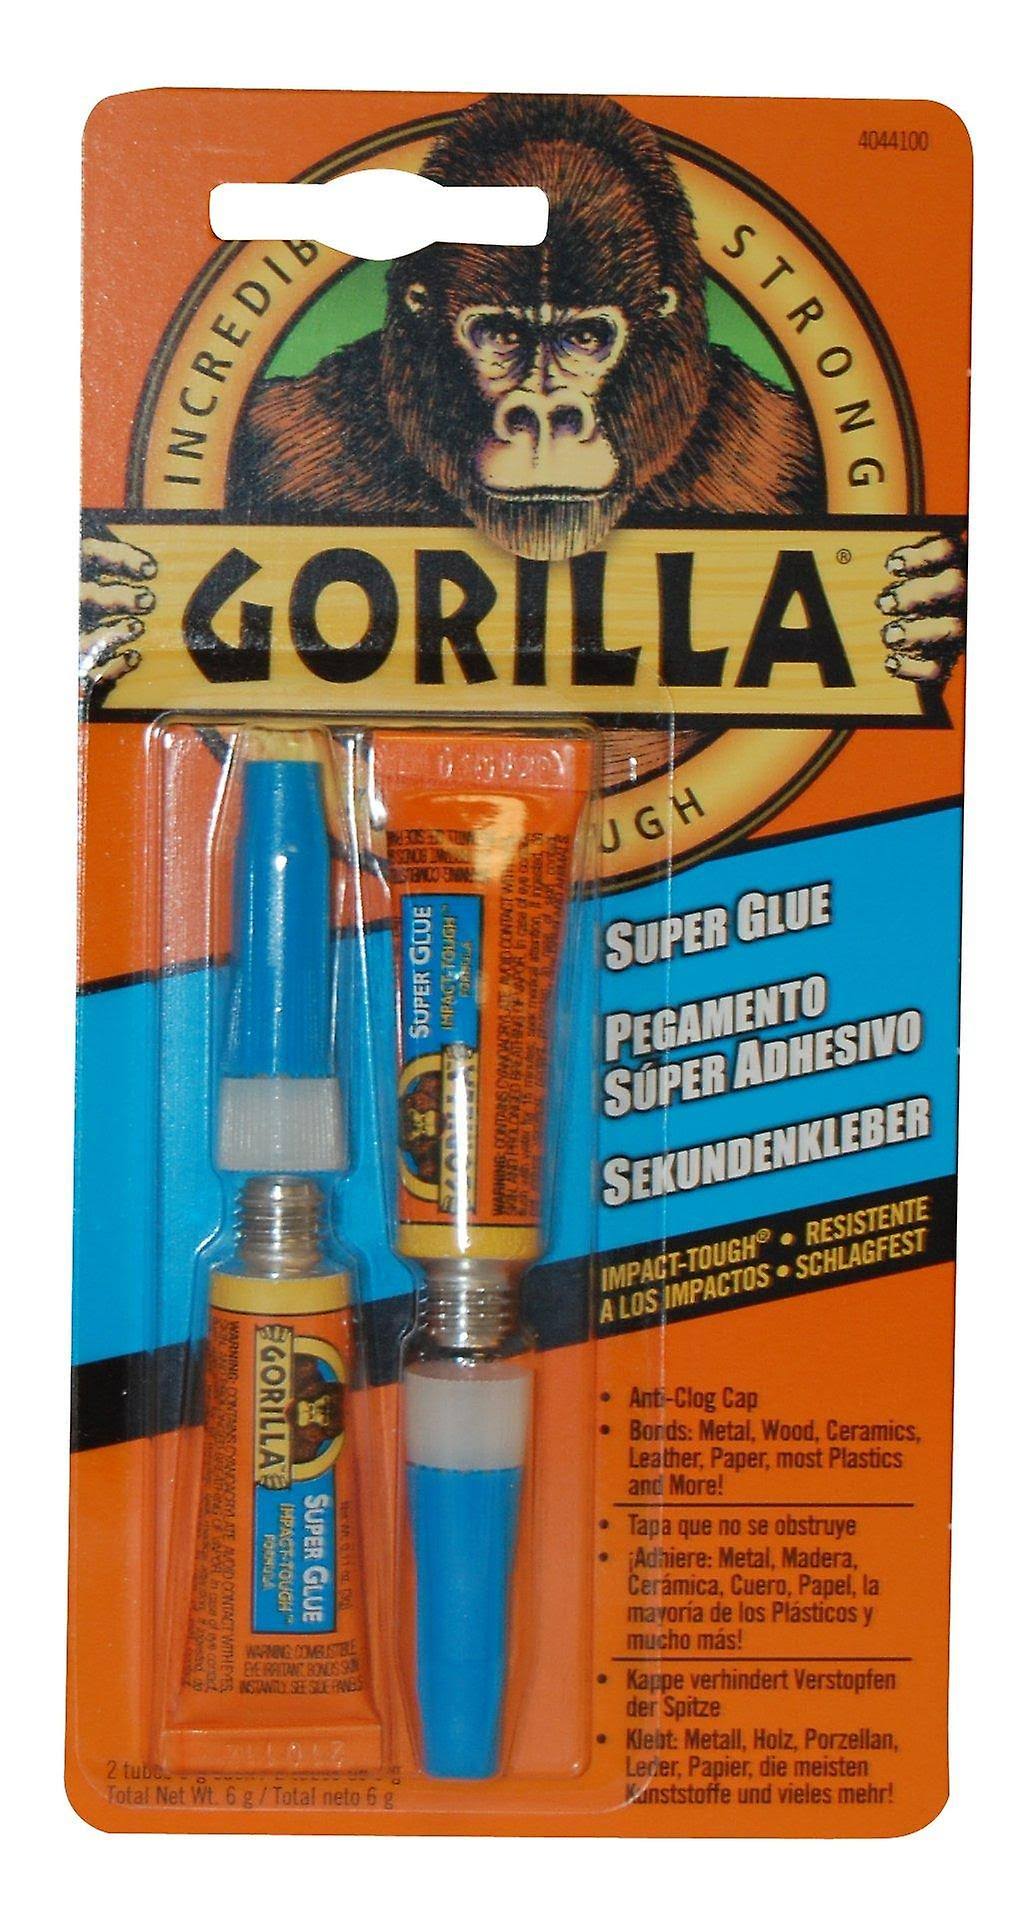 Gorilla Glue 4044100 Super Glue - 2 x 3g